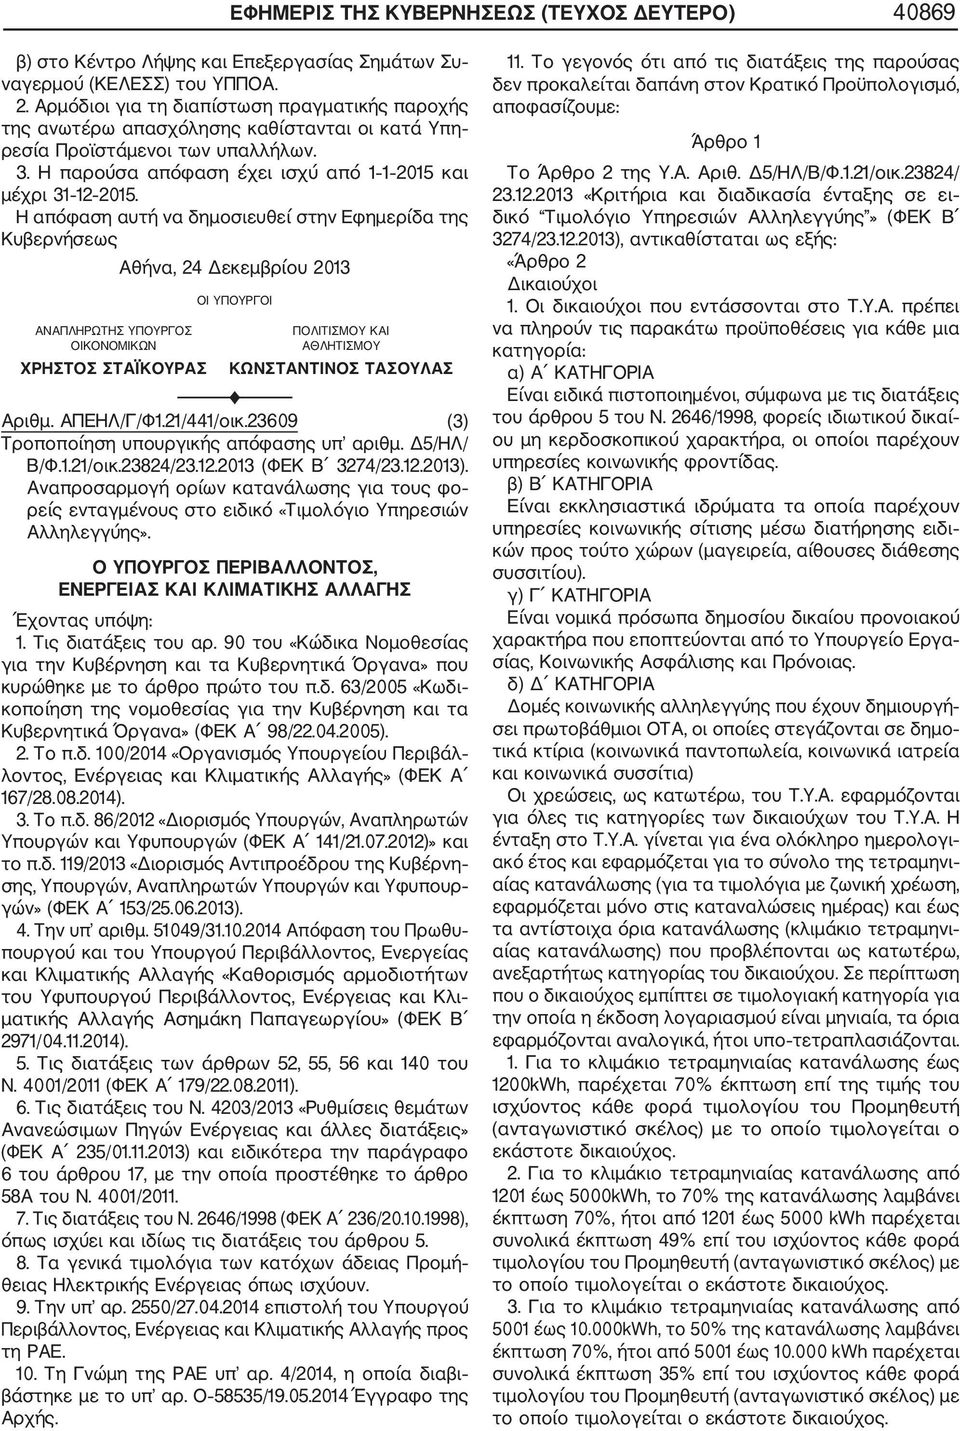 Η απόφαση αυτή να δημοσιευθεί στην Εφημερίδα της Κυβερνήσεως ΑΝΑΠΛΗΡΩΤΗΣ ΥΠΟΥΡΓΟΣ ΟΙΚΟΝΟΜΙΚΩΝ ΧΡΗΣΤΟΣ ΣΤΑΪΚΟΥΡΑΣ Αθήνα, 24 Δεκεμβρίου 2013 ΟΙ ΥΠΟΥΡΓΟΙ ΠΟΛΙΤΙΣΜΟΥ ΚΑΙ ΑΘΛΗΤΙΣΜΟΥ ΚΩΝΣΤΑΝΤΙΝΟΣ ΤΑΣΟΥΛΑΣ